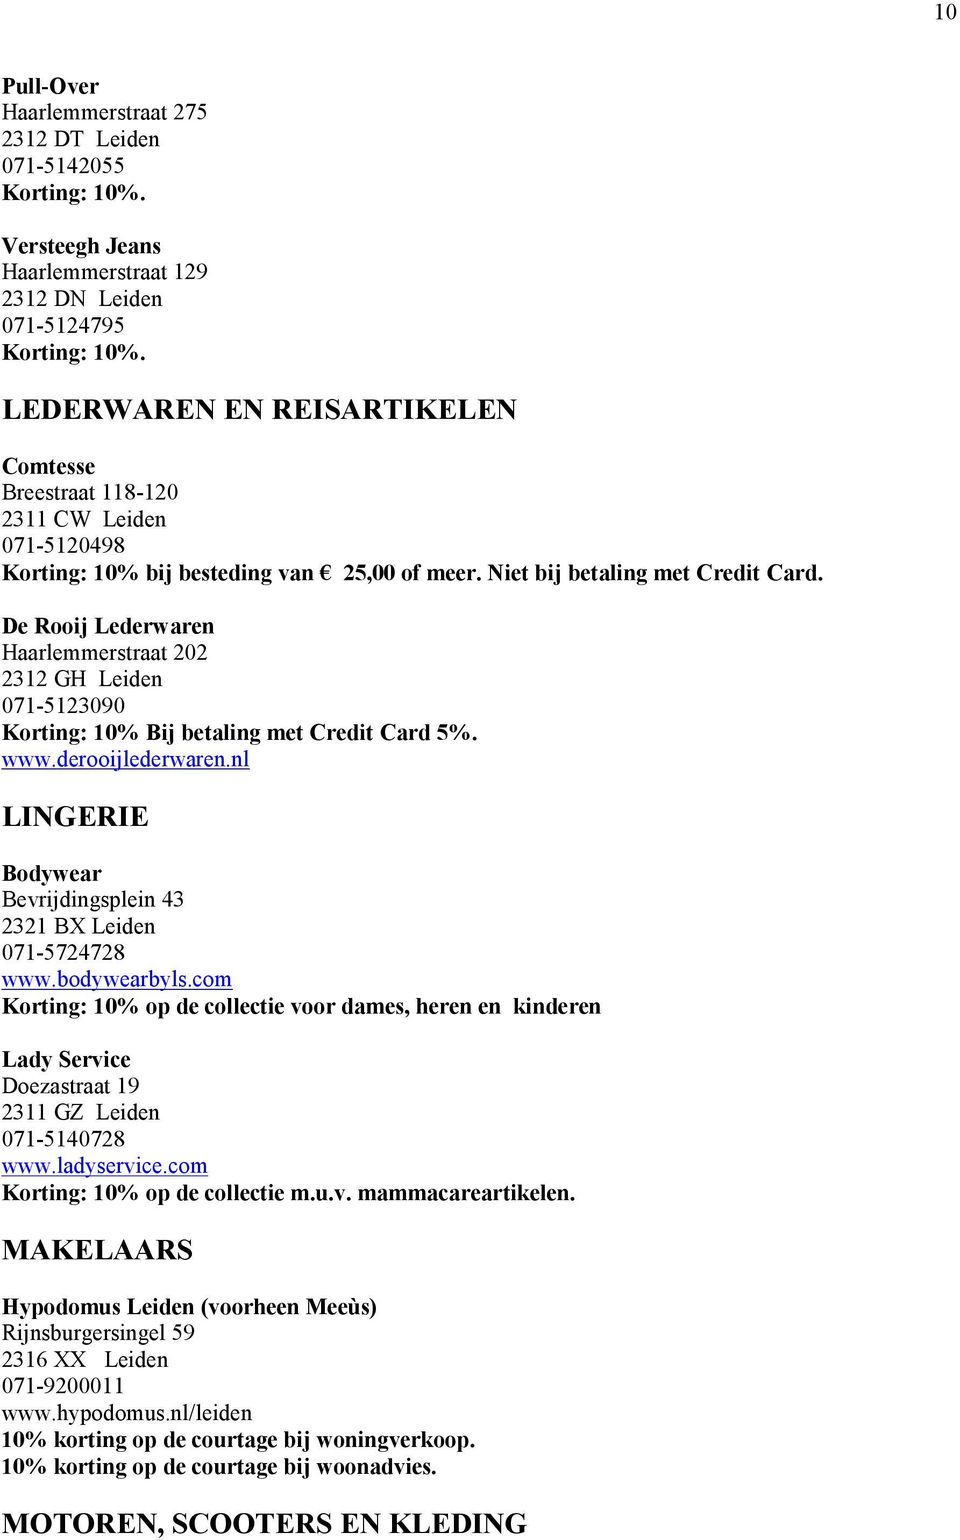 De Rooij Lederwaren Haarlemmerstraat 202 2312 GH Leiden 071-5123090 Korting: 10% Bij betaling met Credit Card 5%. www.derooijlederwaren.